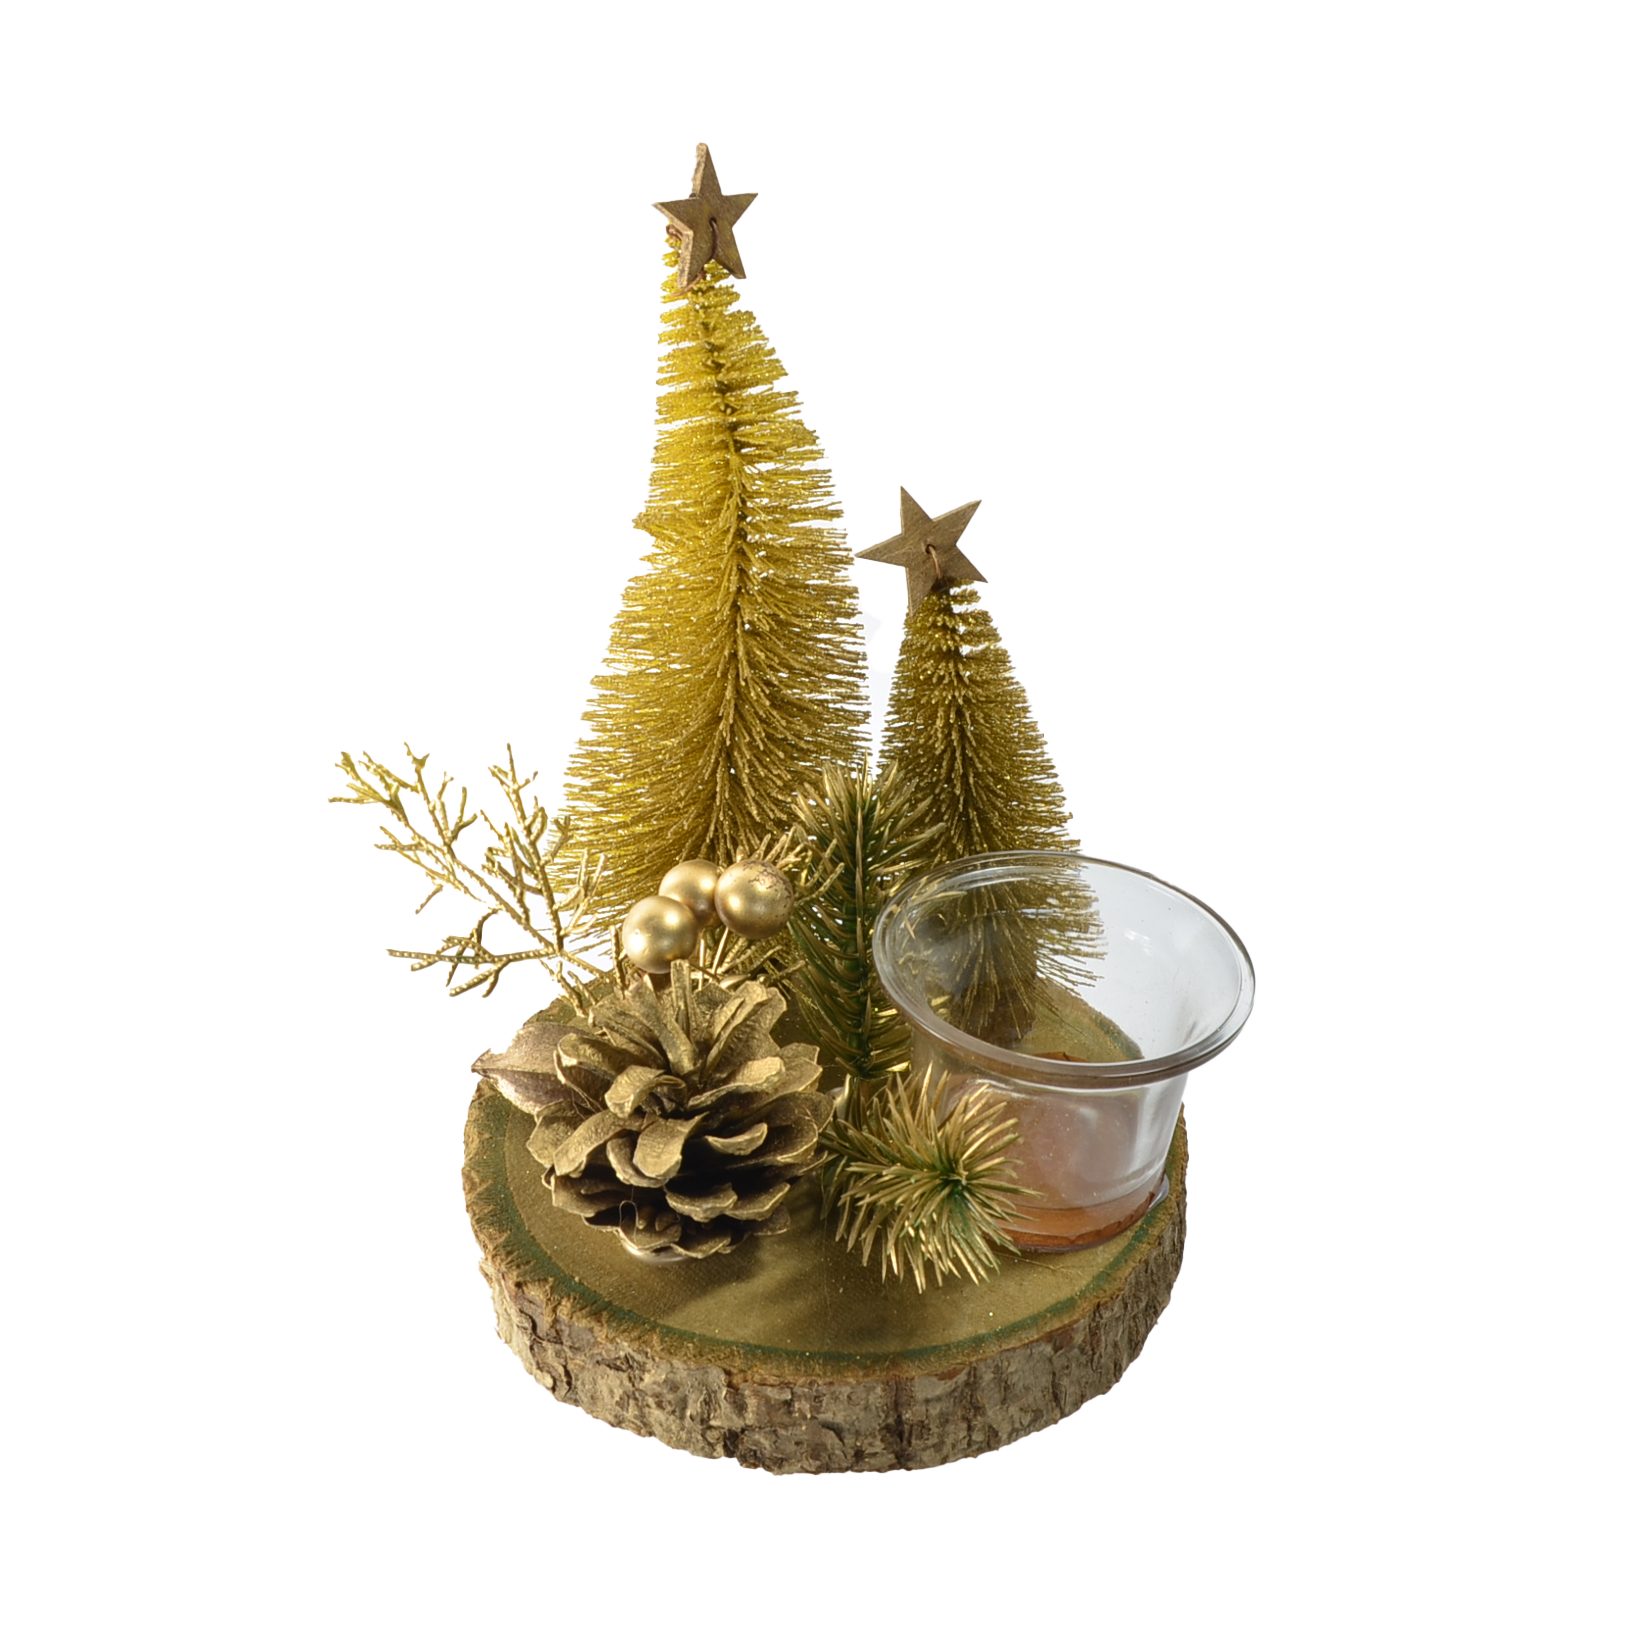 in B&S Zentralmarkt Teelichtglas 14 cm auf Ø Goldtönen Teelichthalter SB Weihnachts Holzplatte